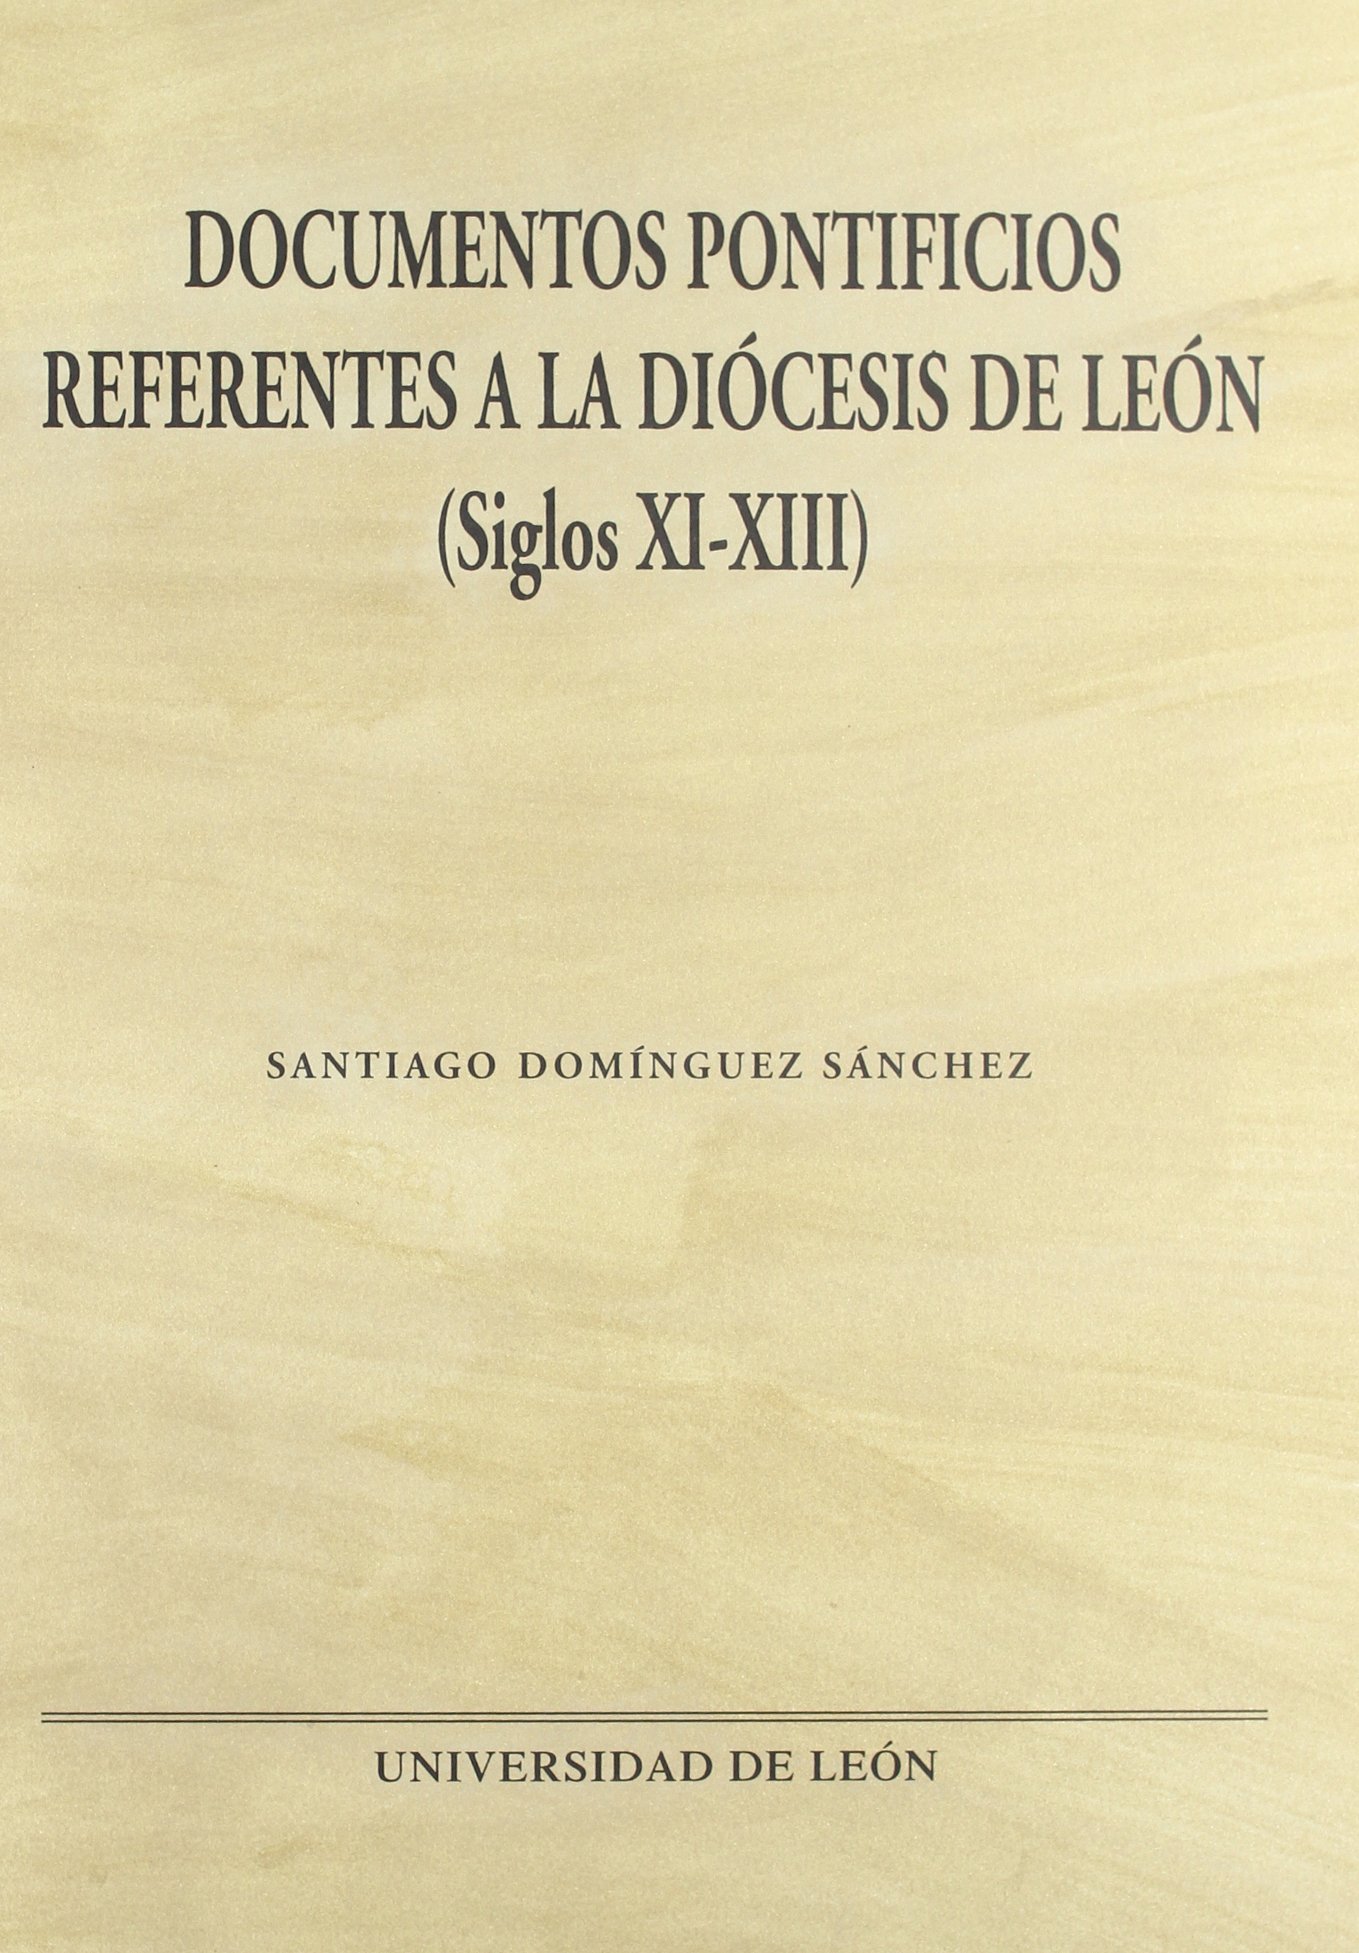 Imagen de portada del libro Documentos pontificios referentes a la Diócesis de León (siglos XI-XIII)